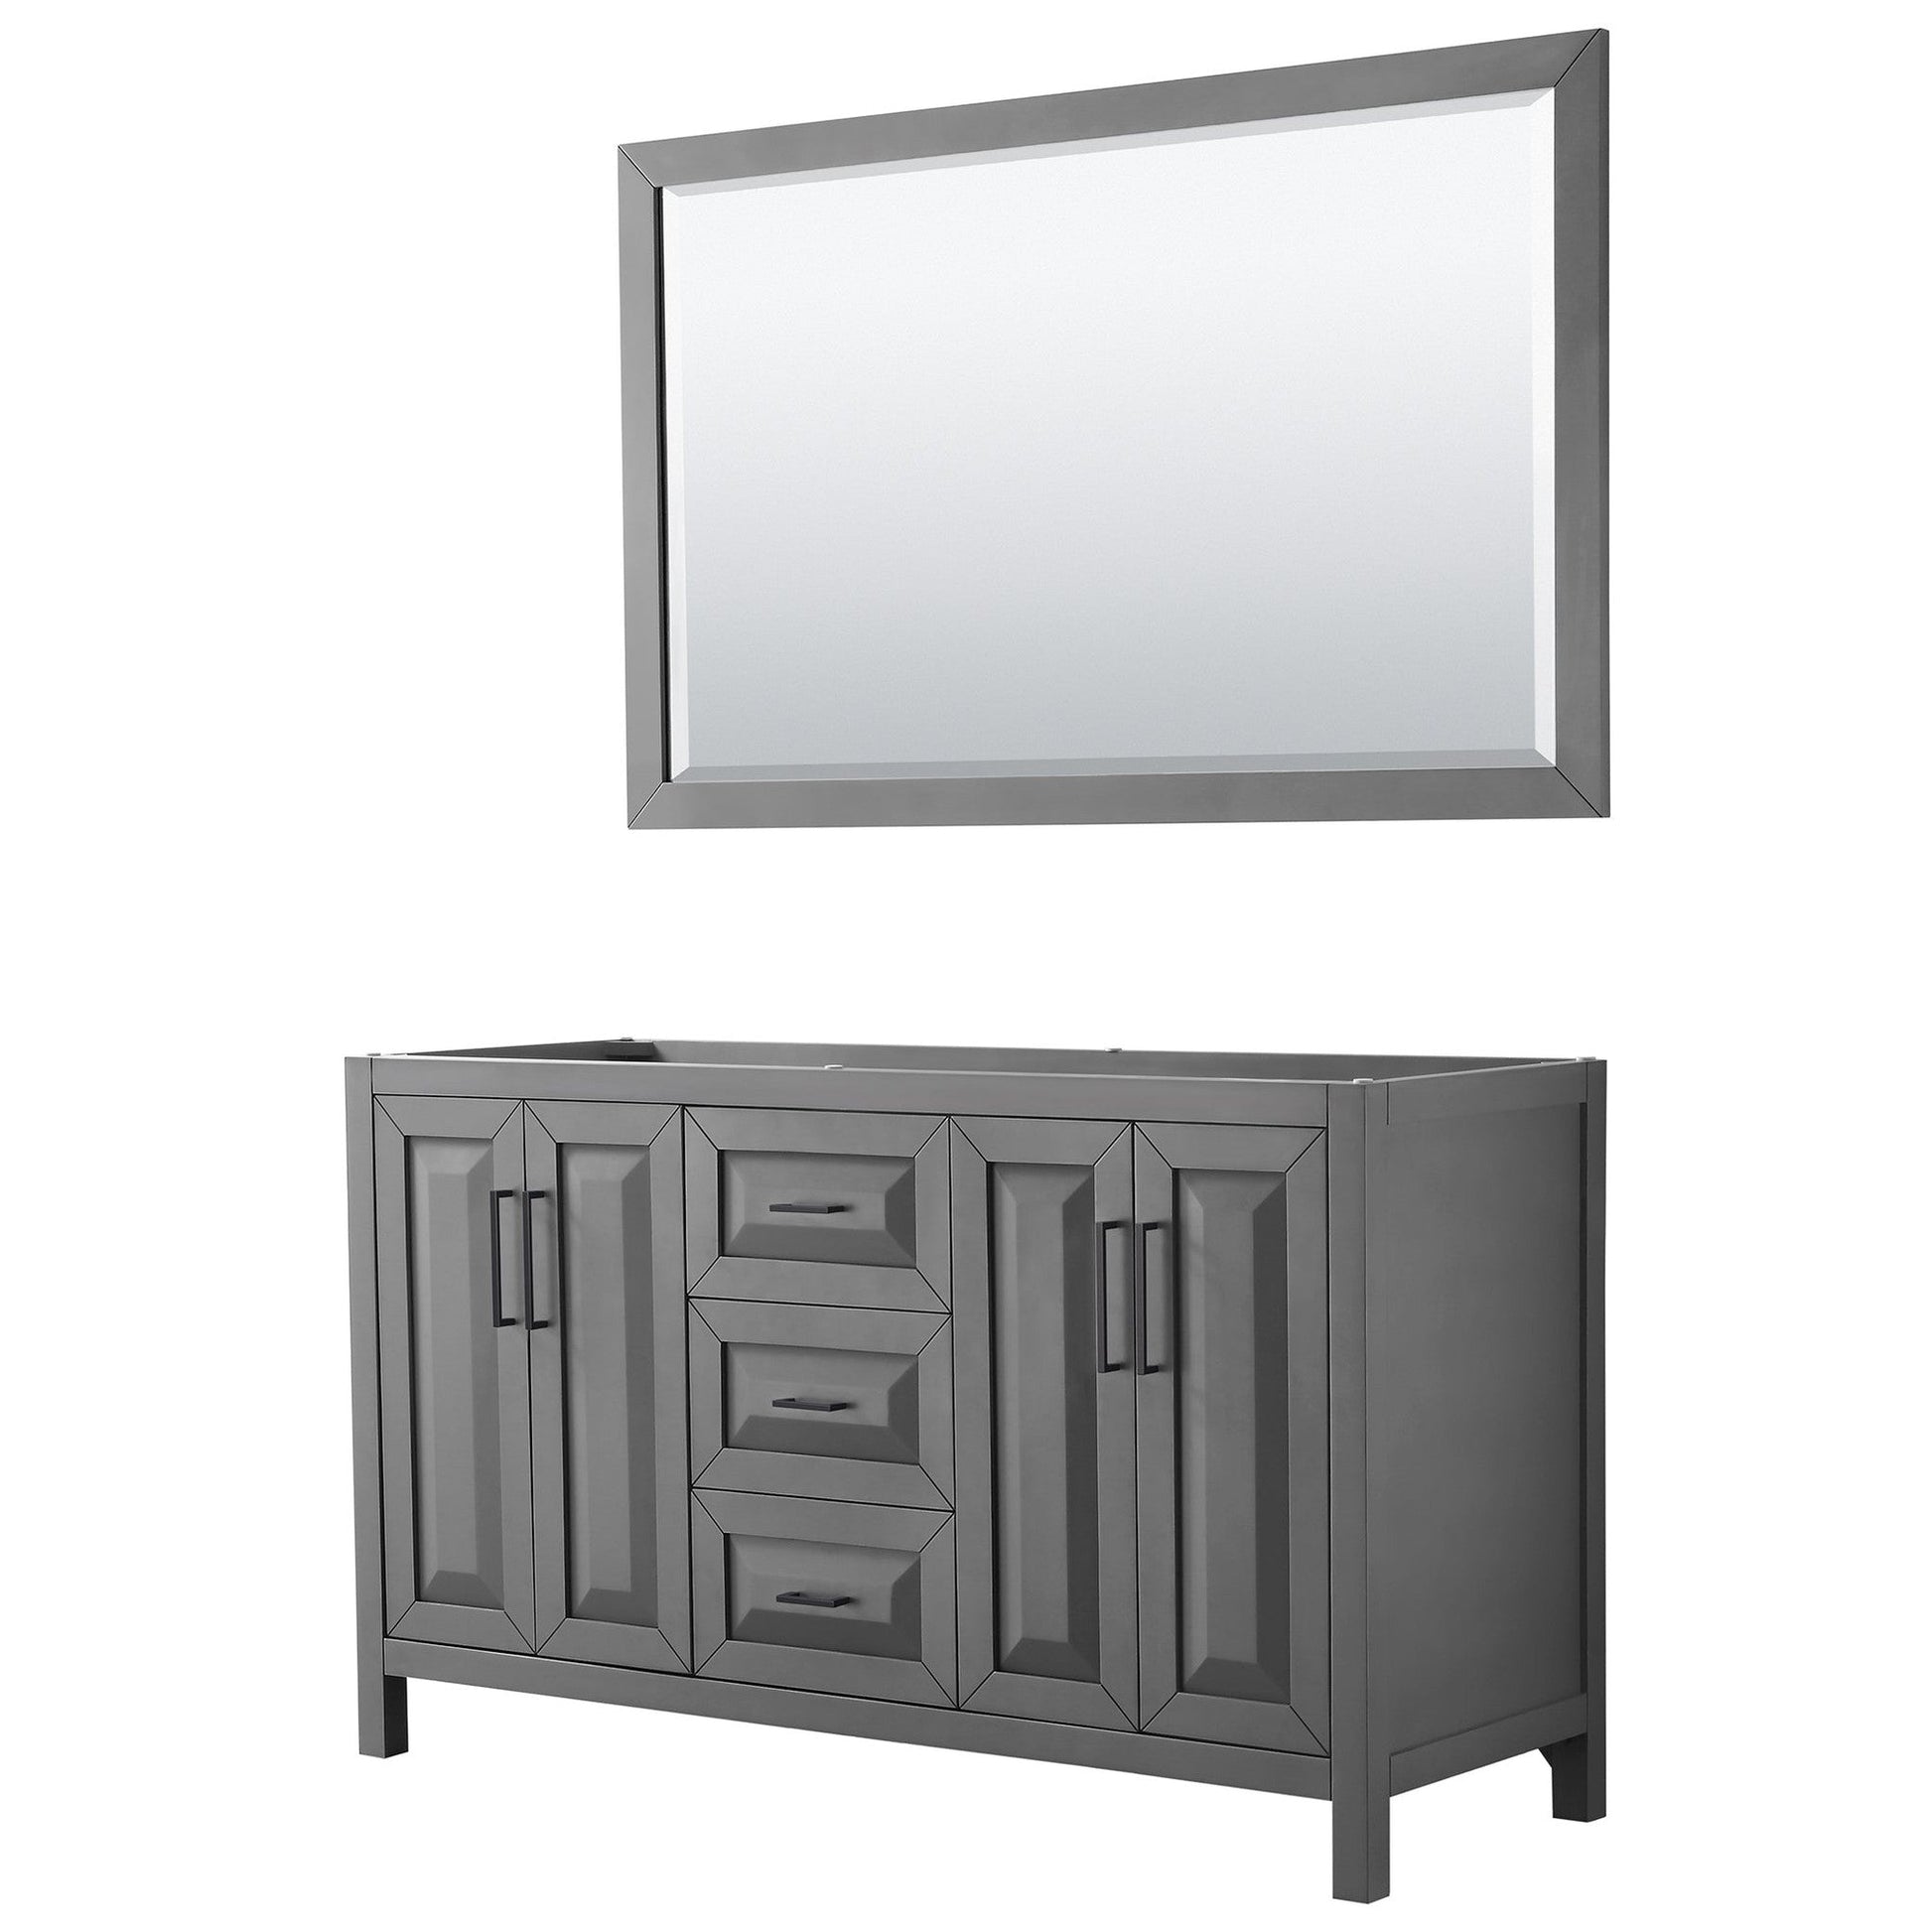 Daria 60" Double Bathroom Vanity in Dark Gray, No Countertop, No Sink, Matte Black Trim, 58" Mirror